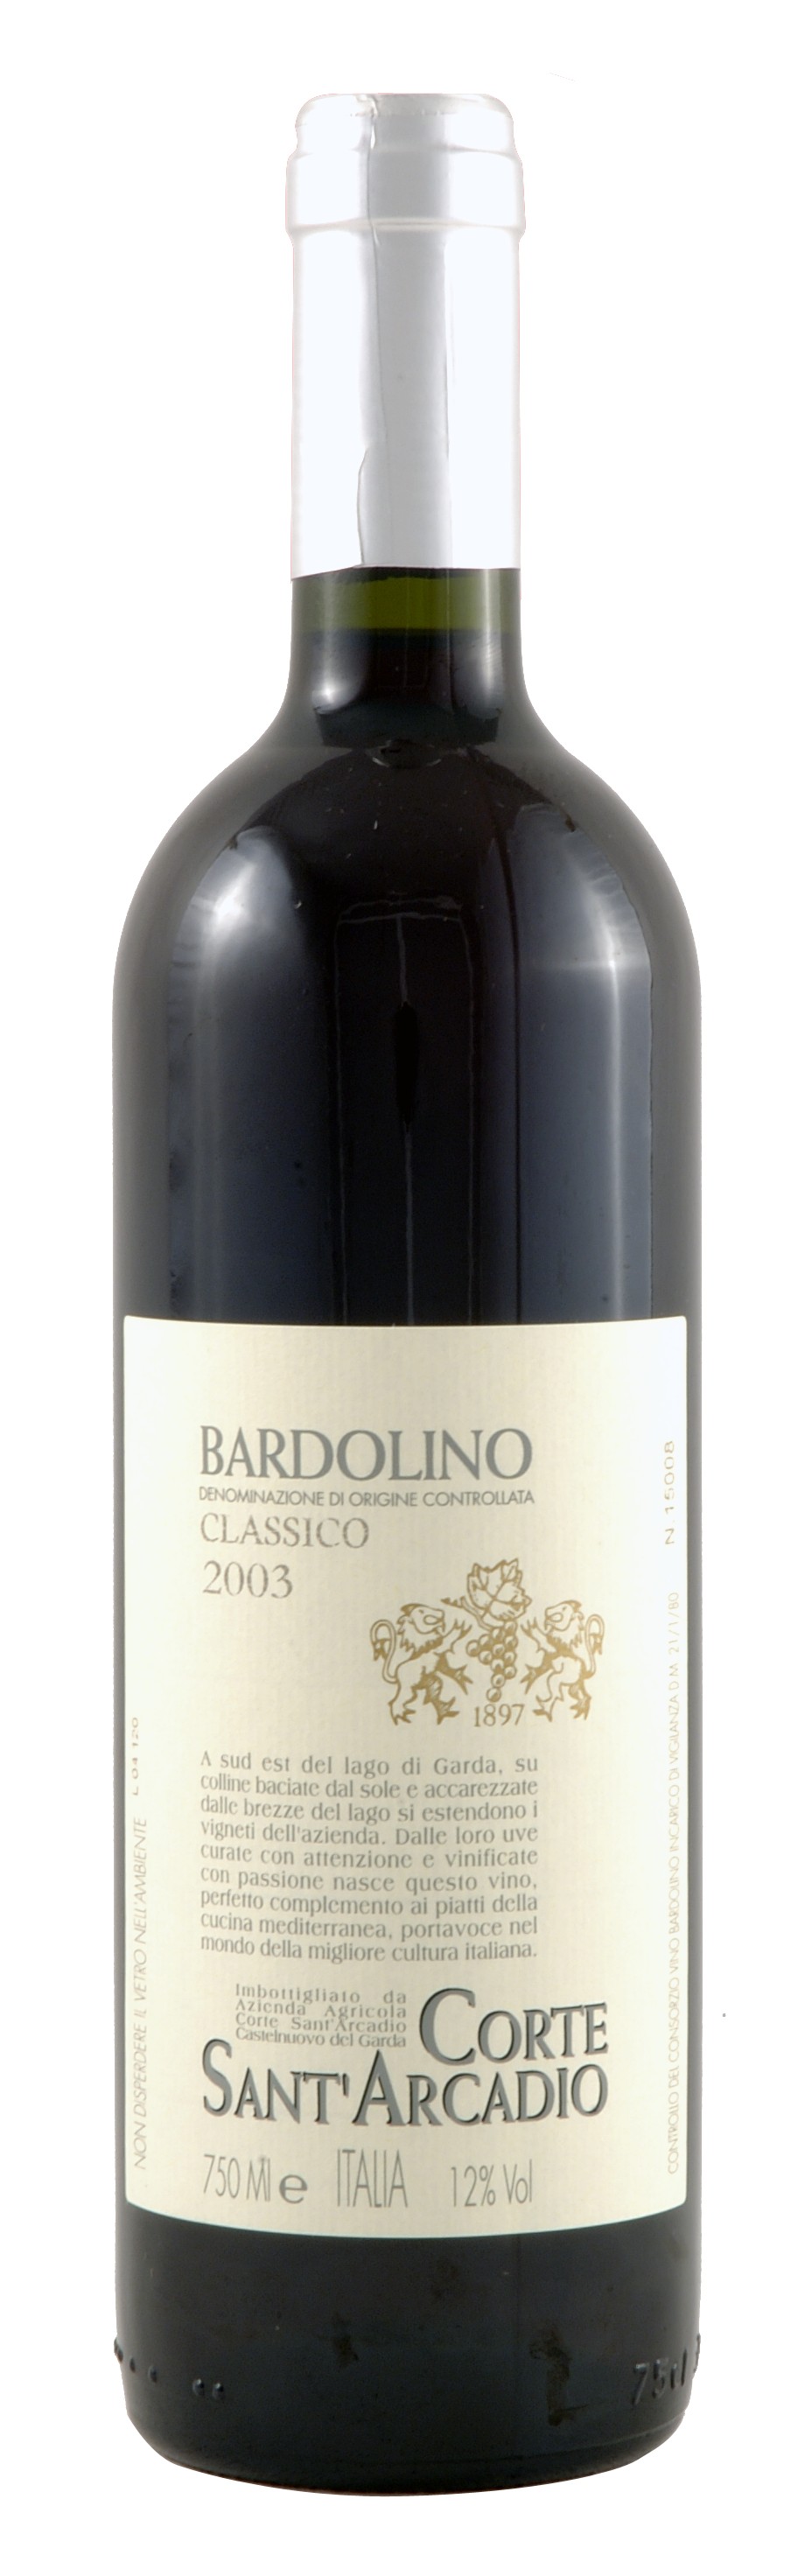 Unbranded 2006 Bardolino Classico - Azienda Corte Santand#39; Arcadio